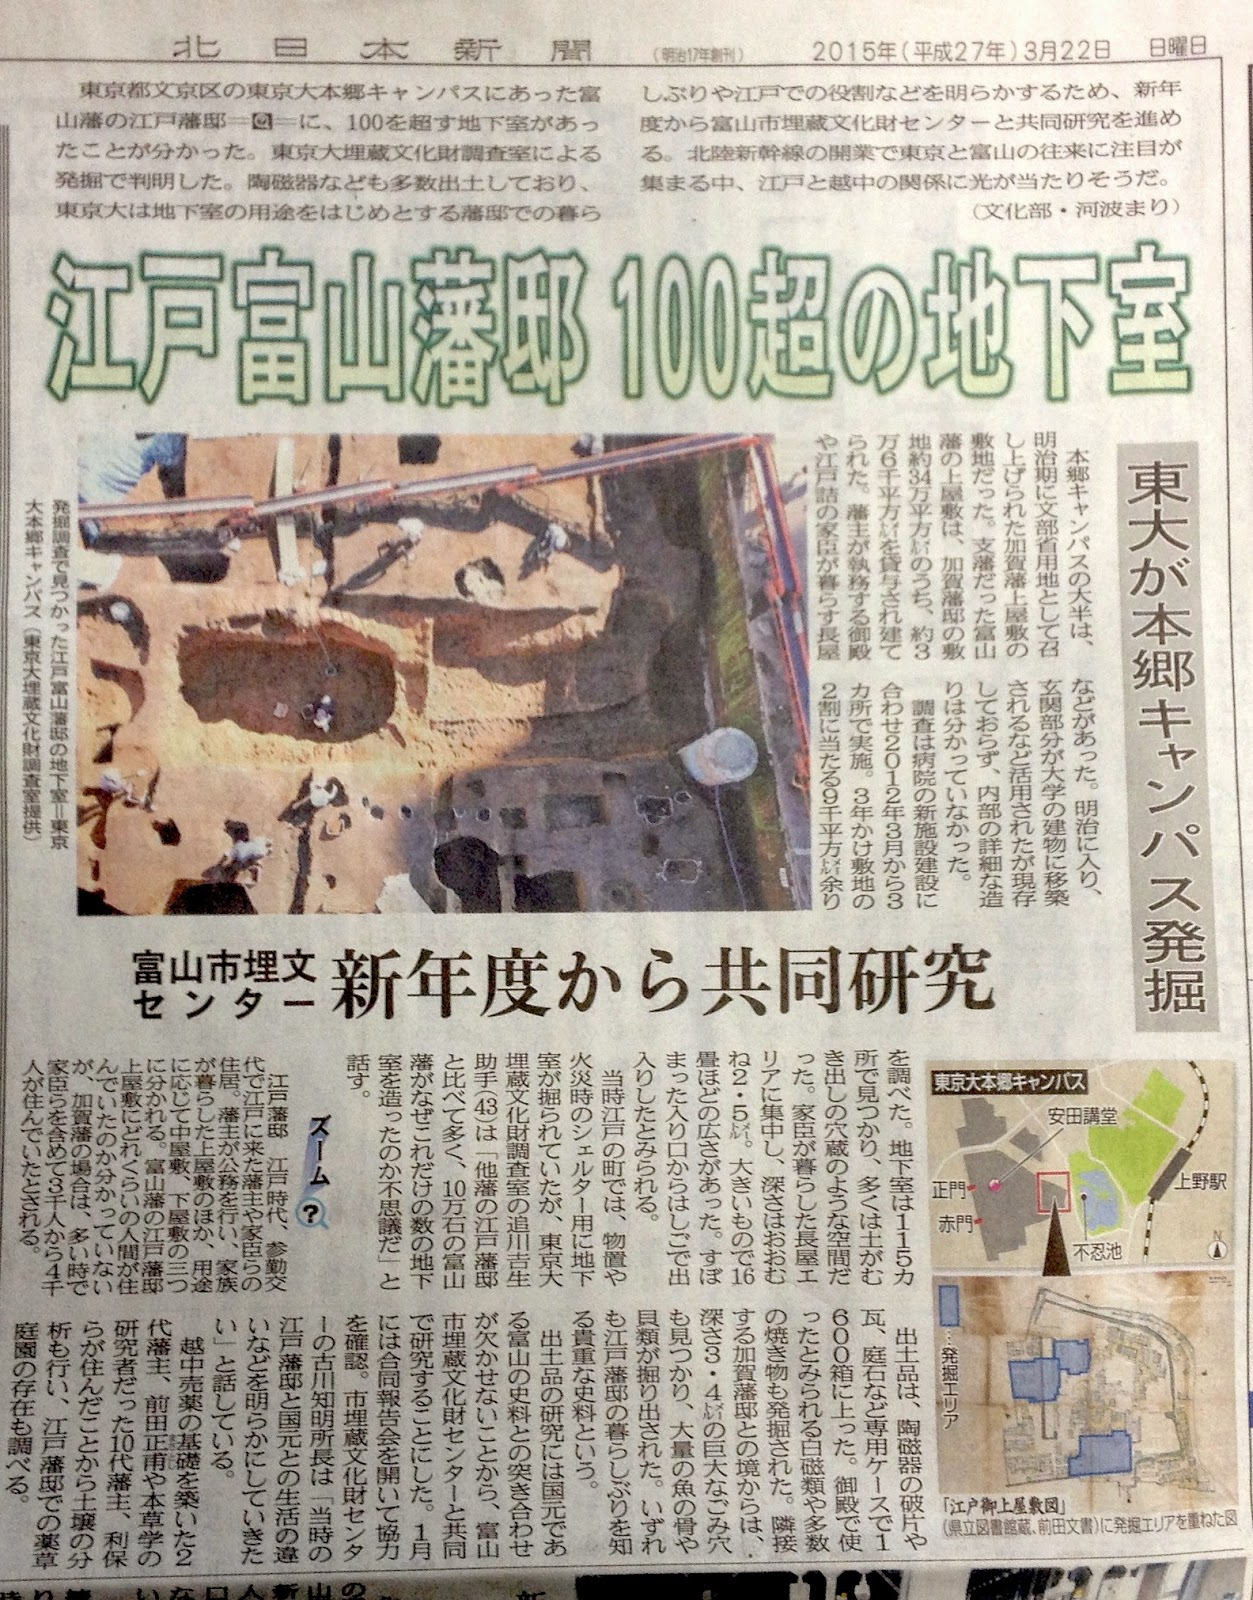 堀切もえの富山城跡探訪[ヤマジロノススメ]: 江戸富山藩邸に100を超す地下室が存在した